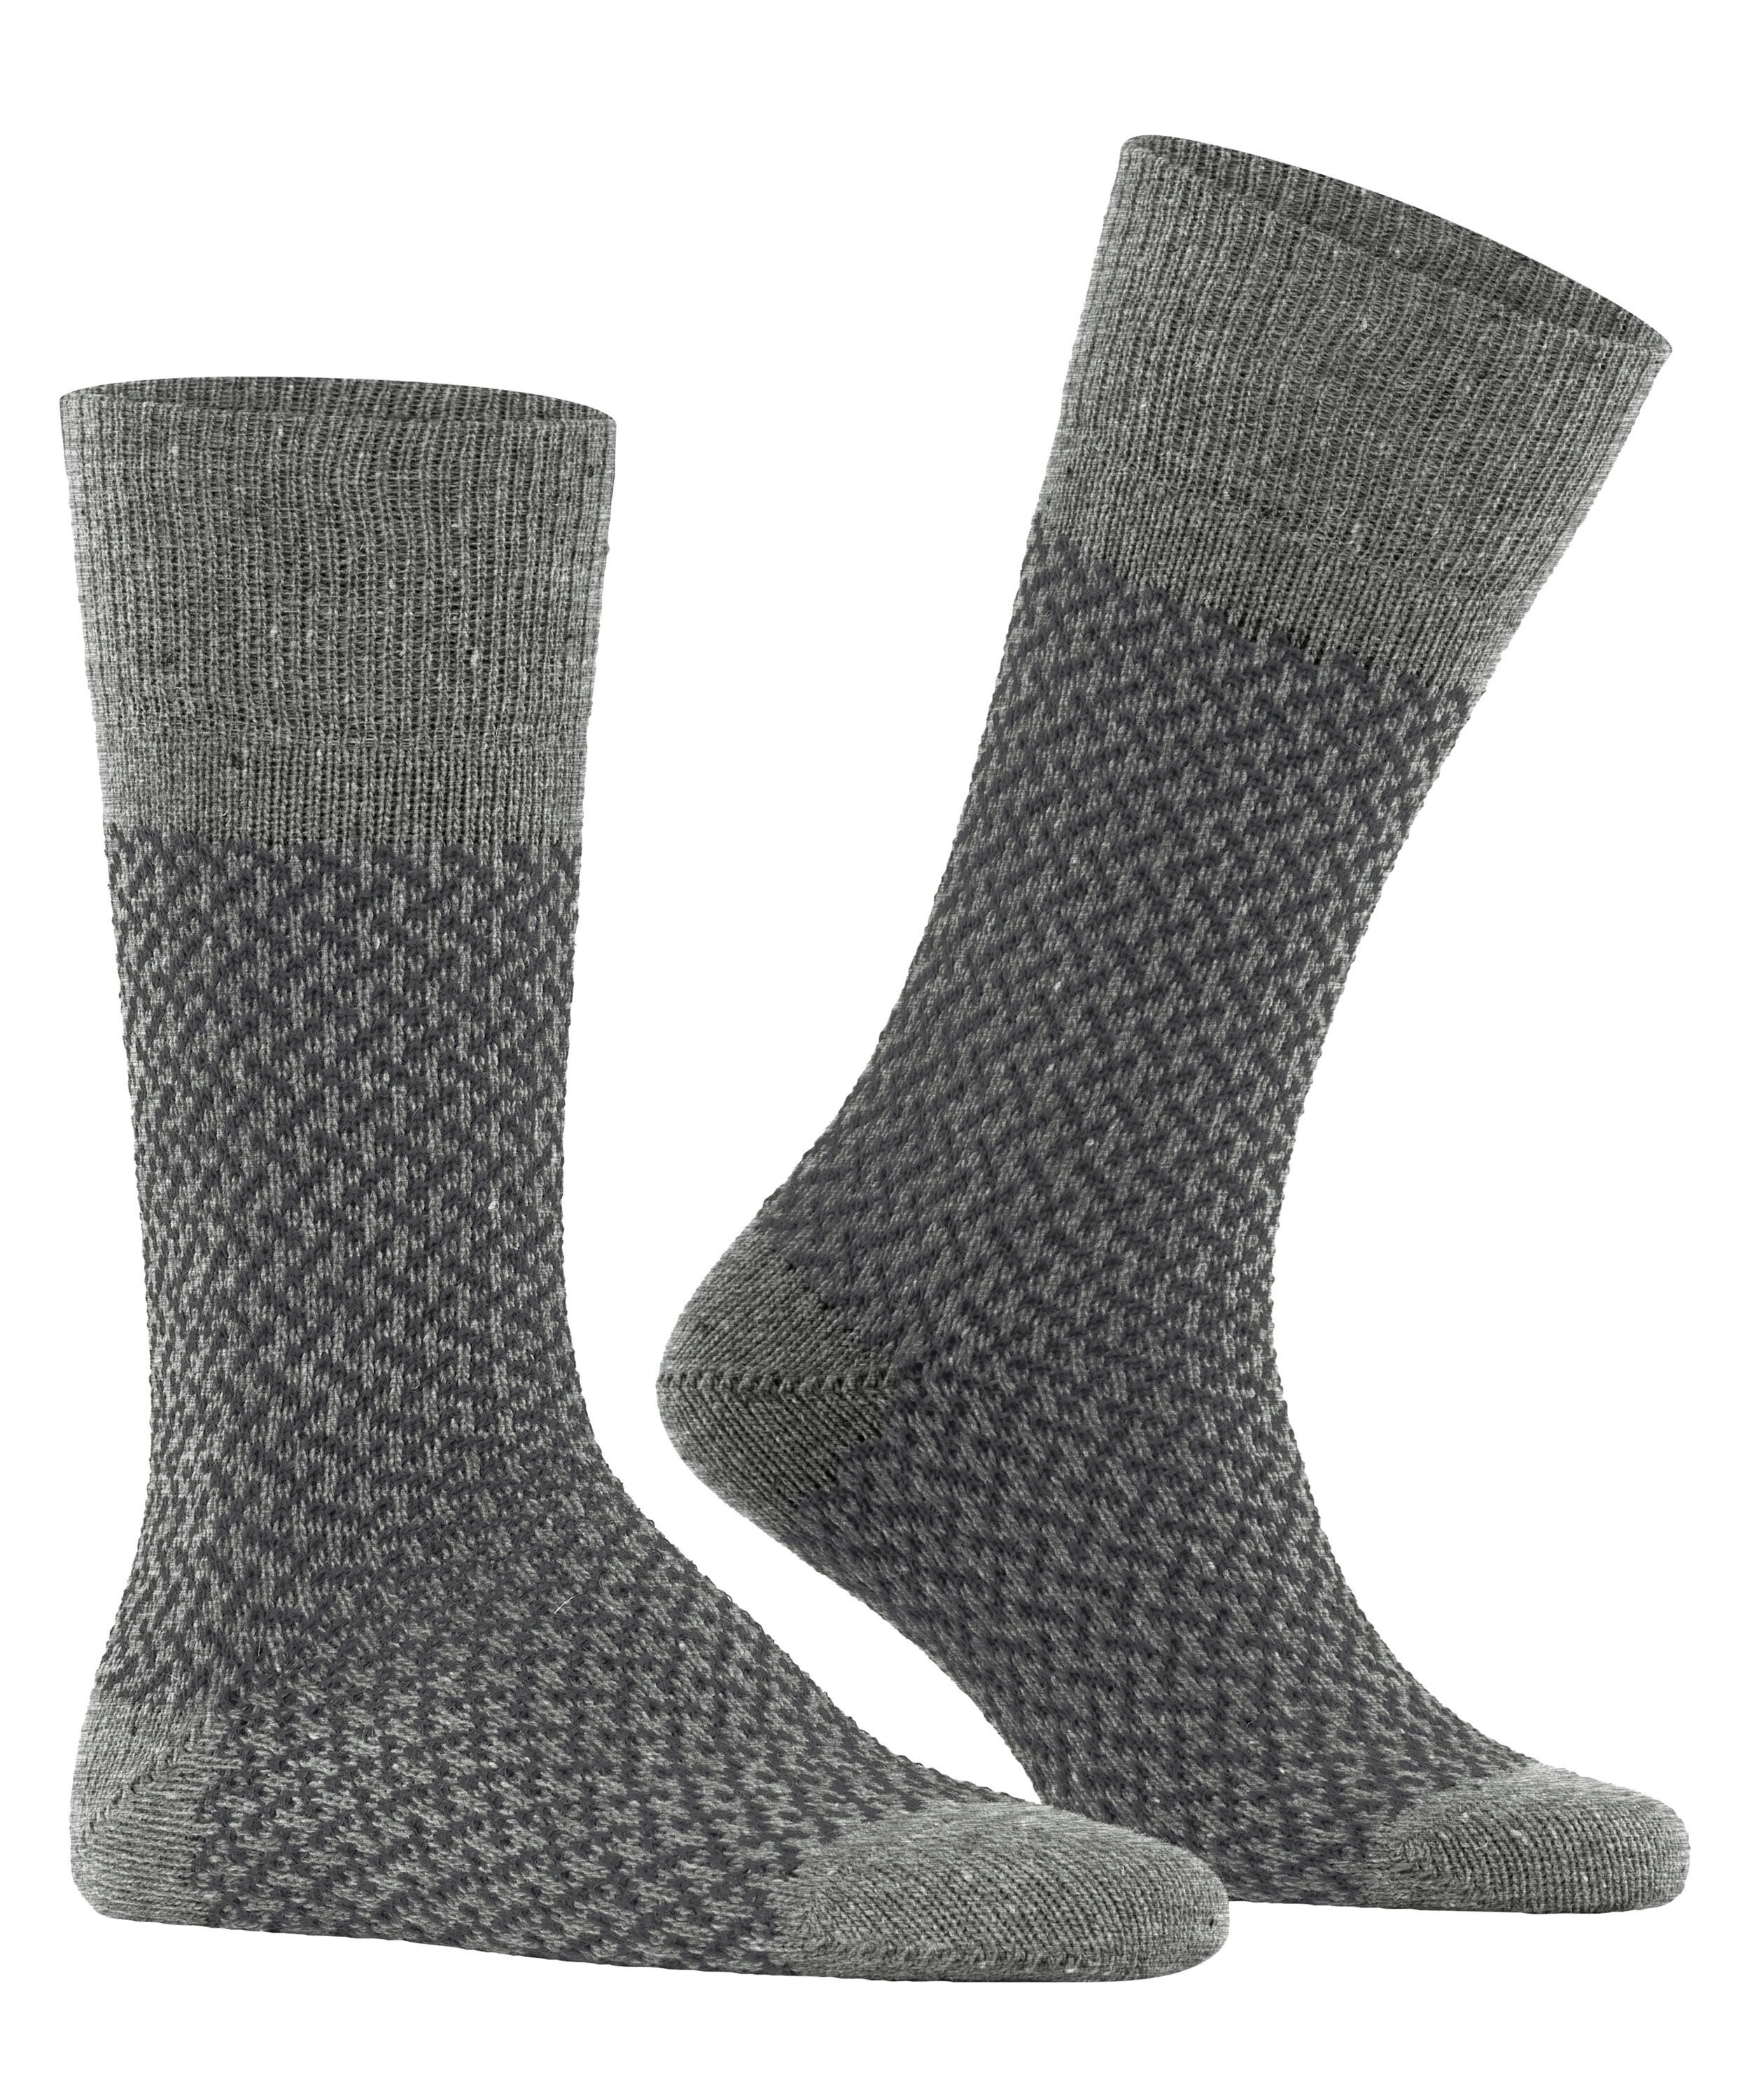 Socken (1-Paar) Esprit Boot (3400) Twill grey light